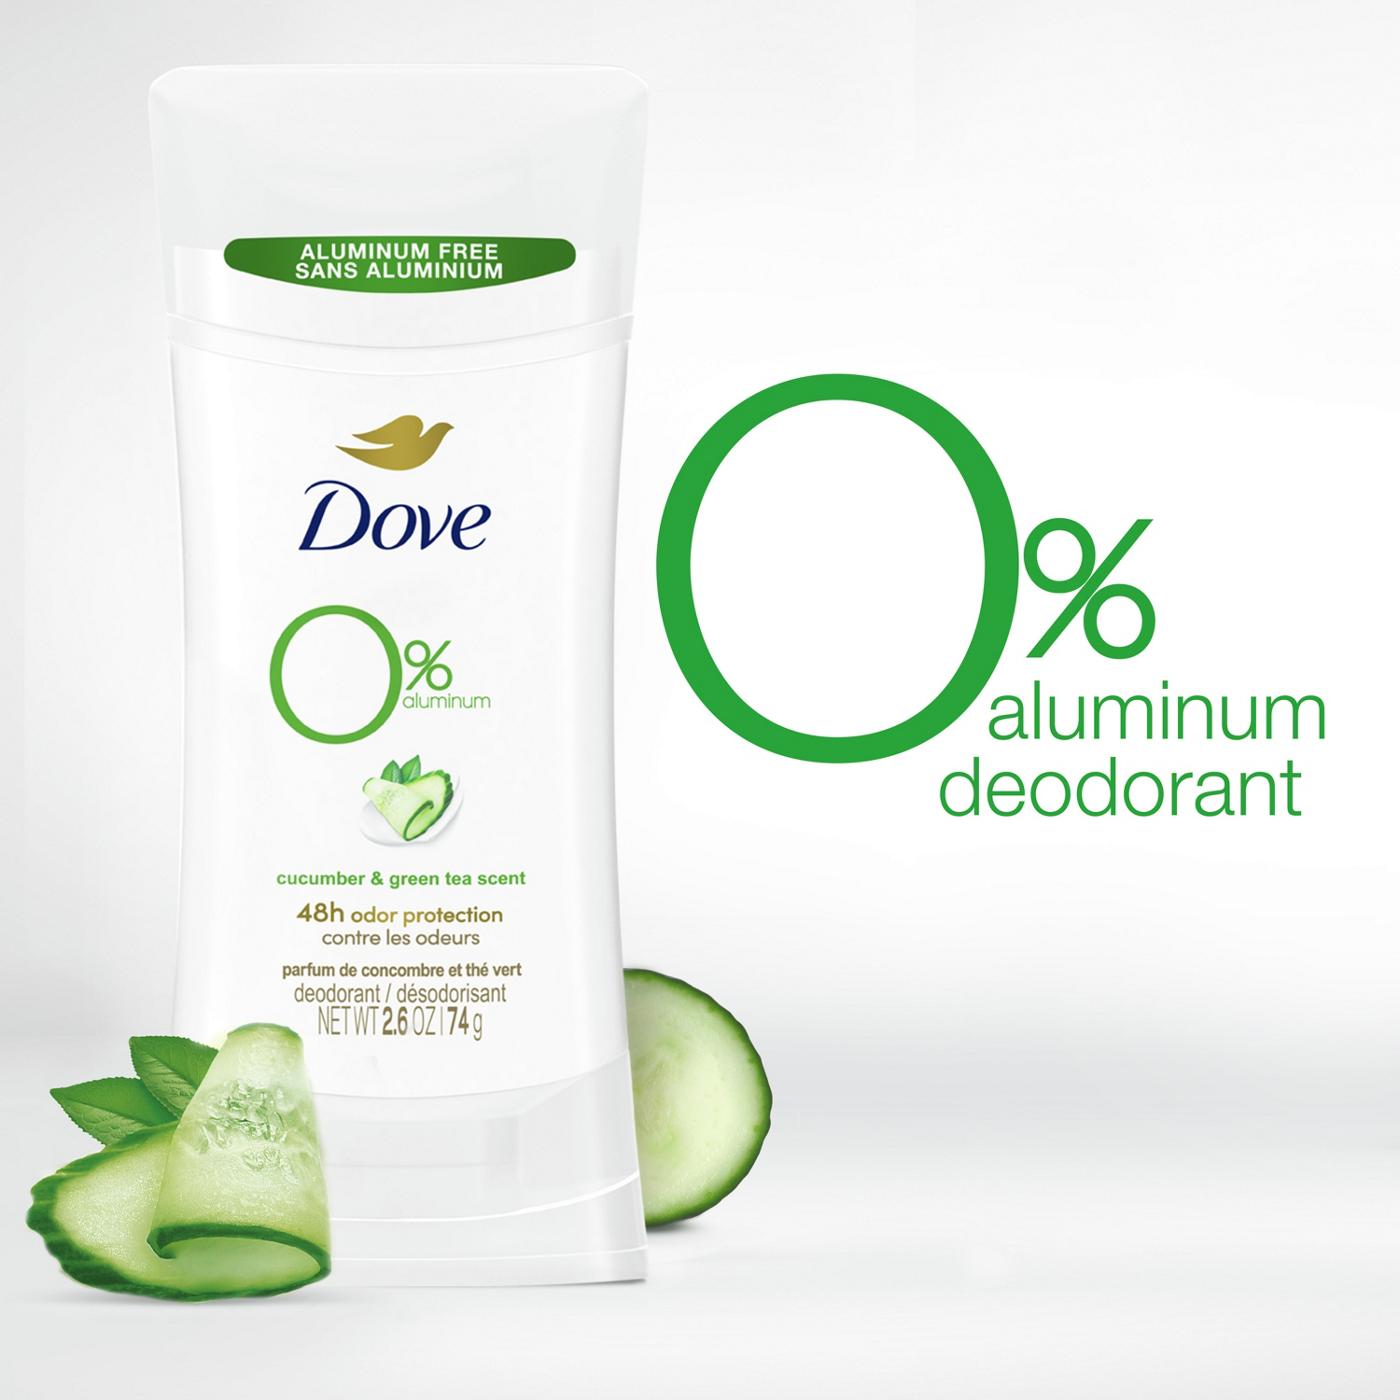 Dove 0% Aluminum Deodorant - Cucumber & Green Tea; image 4 of 8